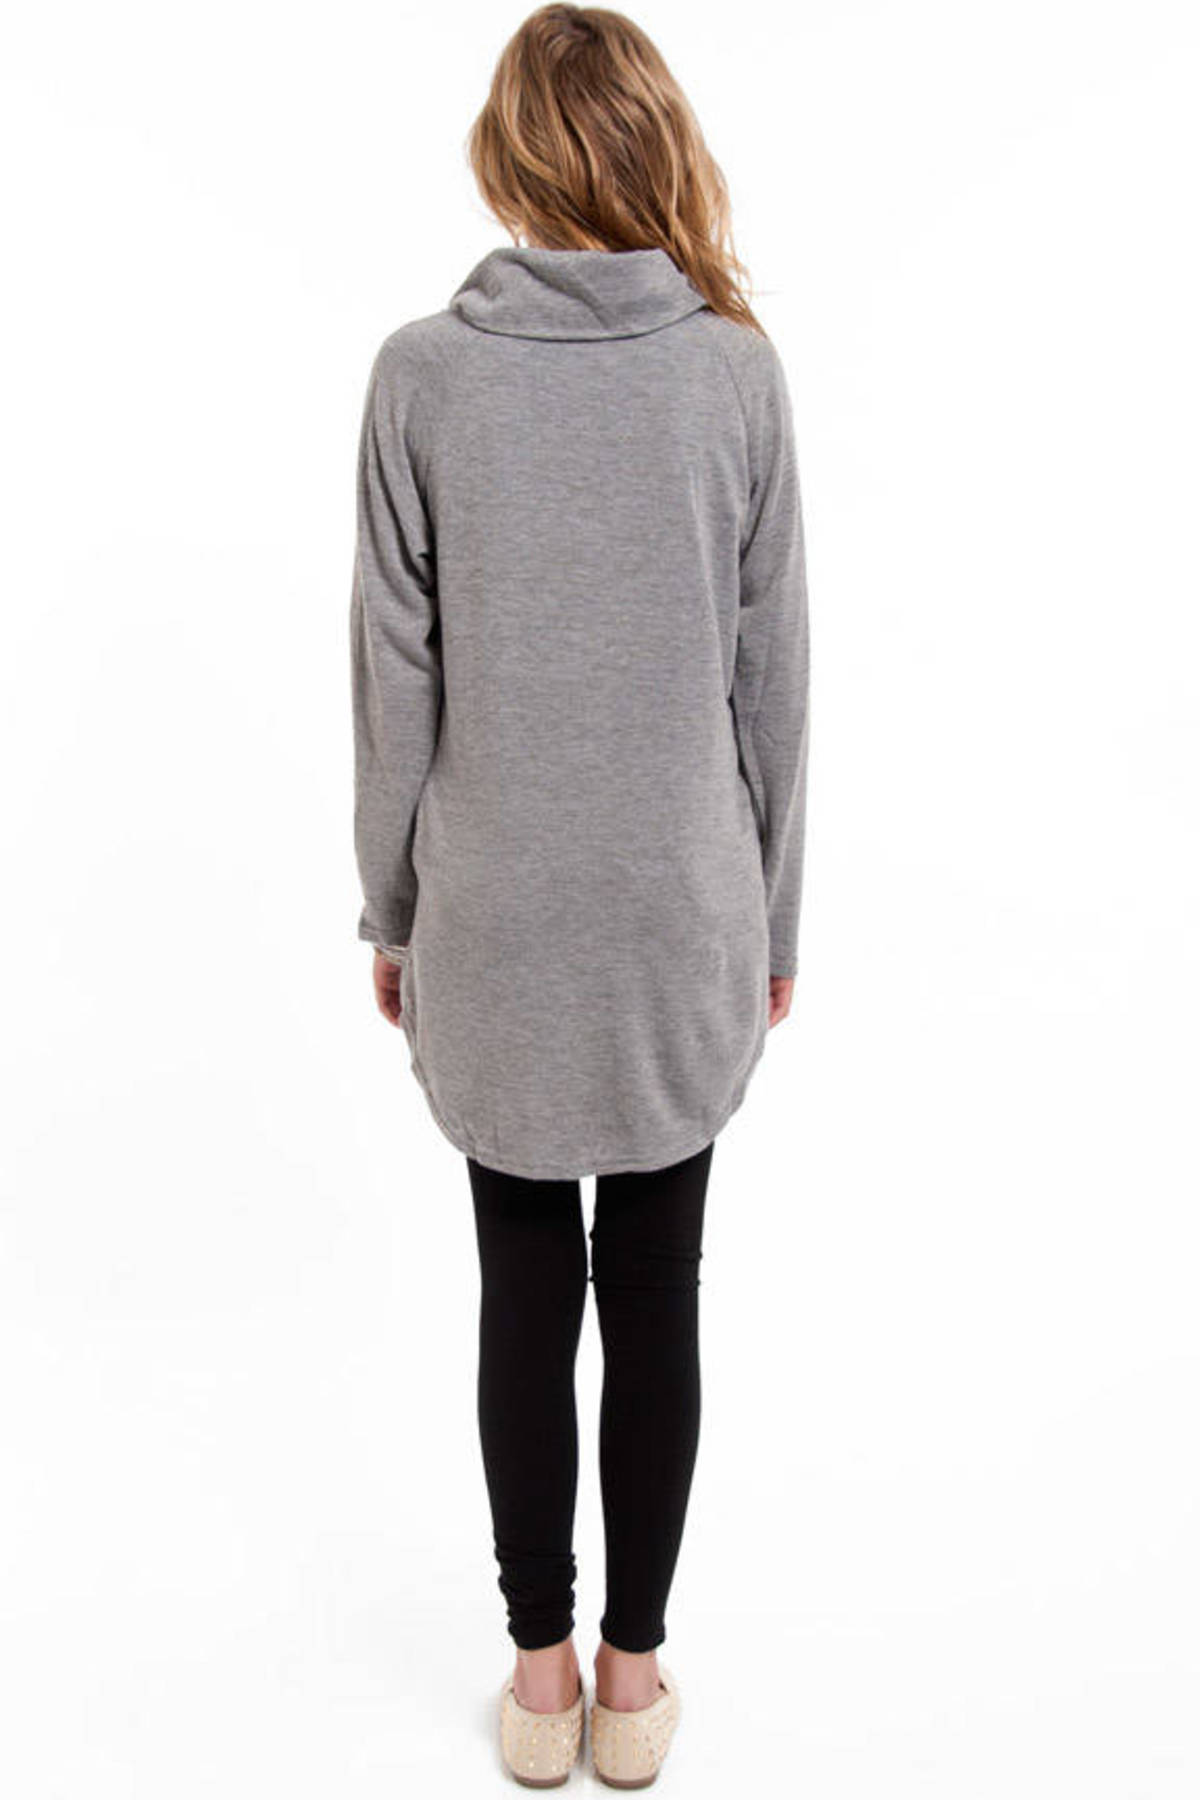 Funnel Neck Zip Up Sweater in Heather Grey - $29 | Tobi US